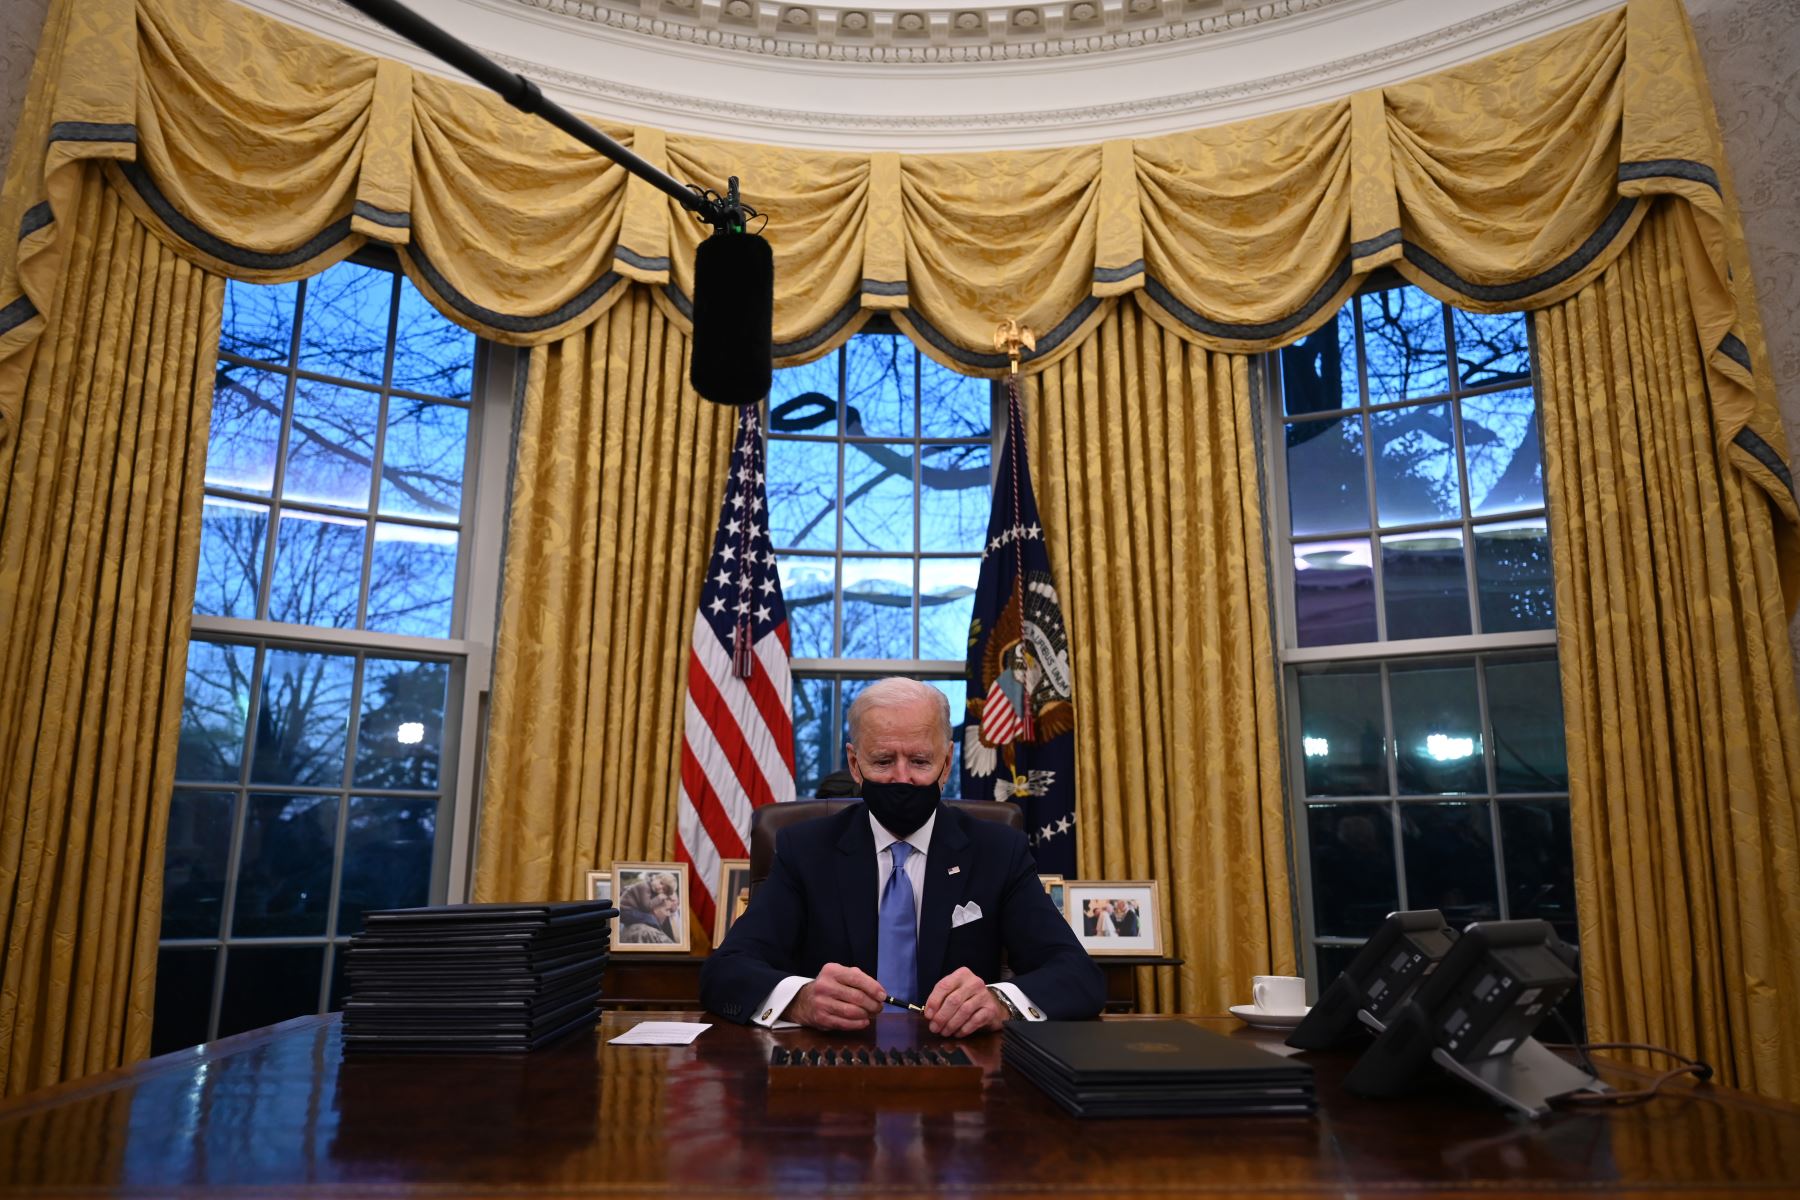 El presidente de los Estados Unidos, Joe Biden, sostiene una pluma mientras se prepara para firmar una serie de órdenes en la Oficina Oval de la Casa Blanca en Washington, DC, después de prestar juramento en el Capitolio de los Estados Unidos.
Foto: AFP